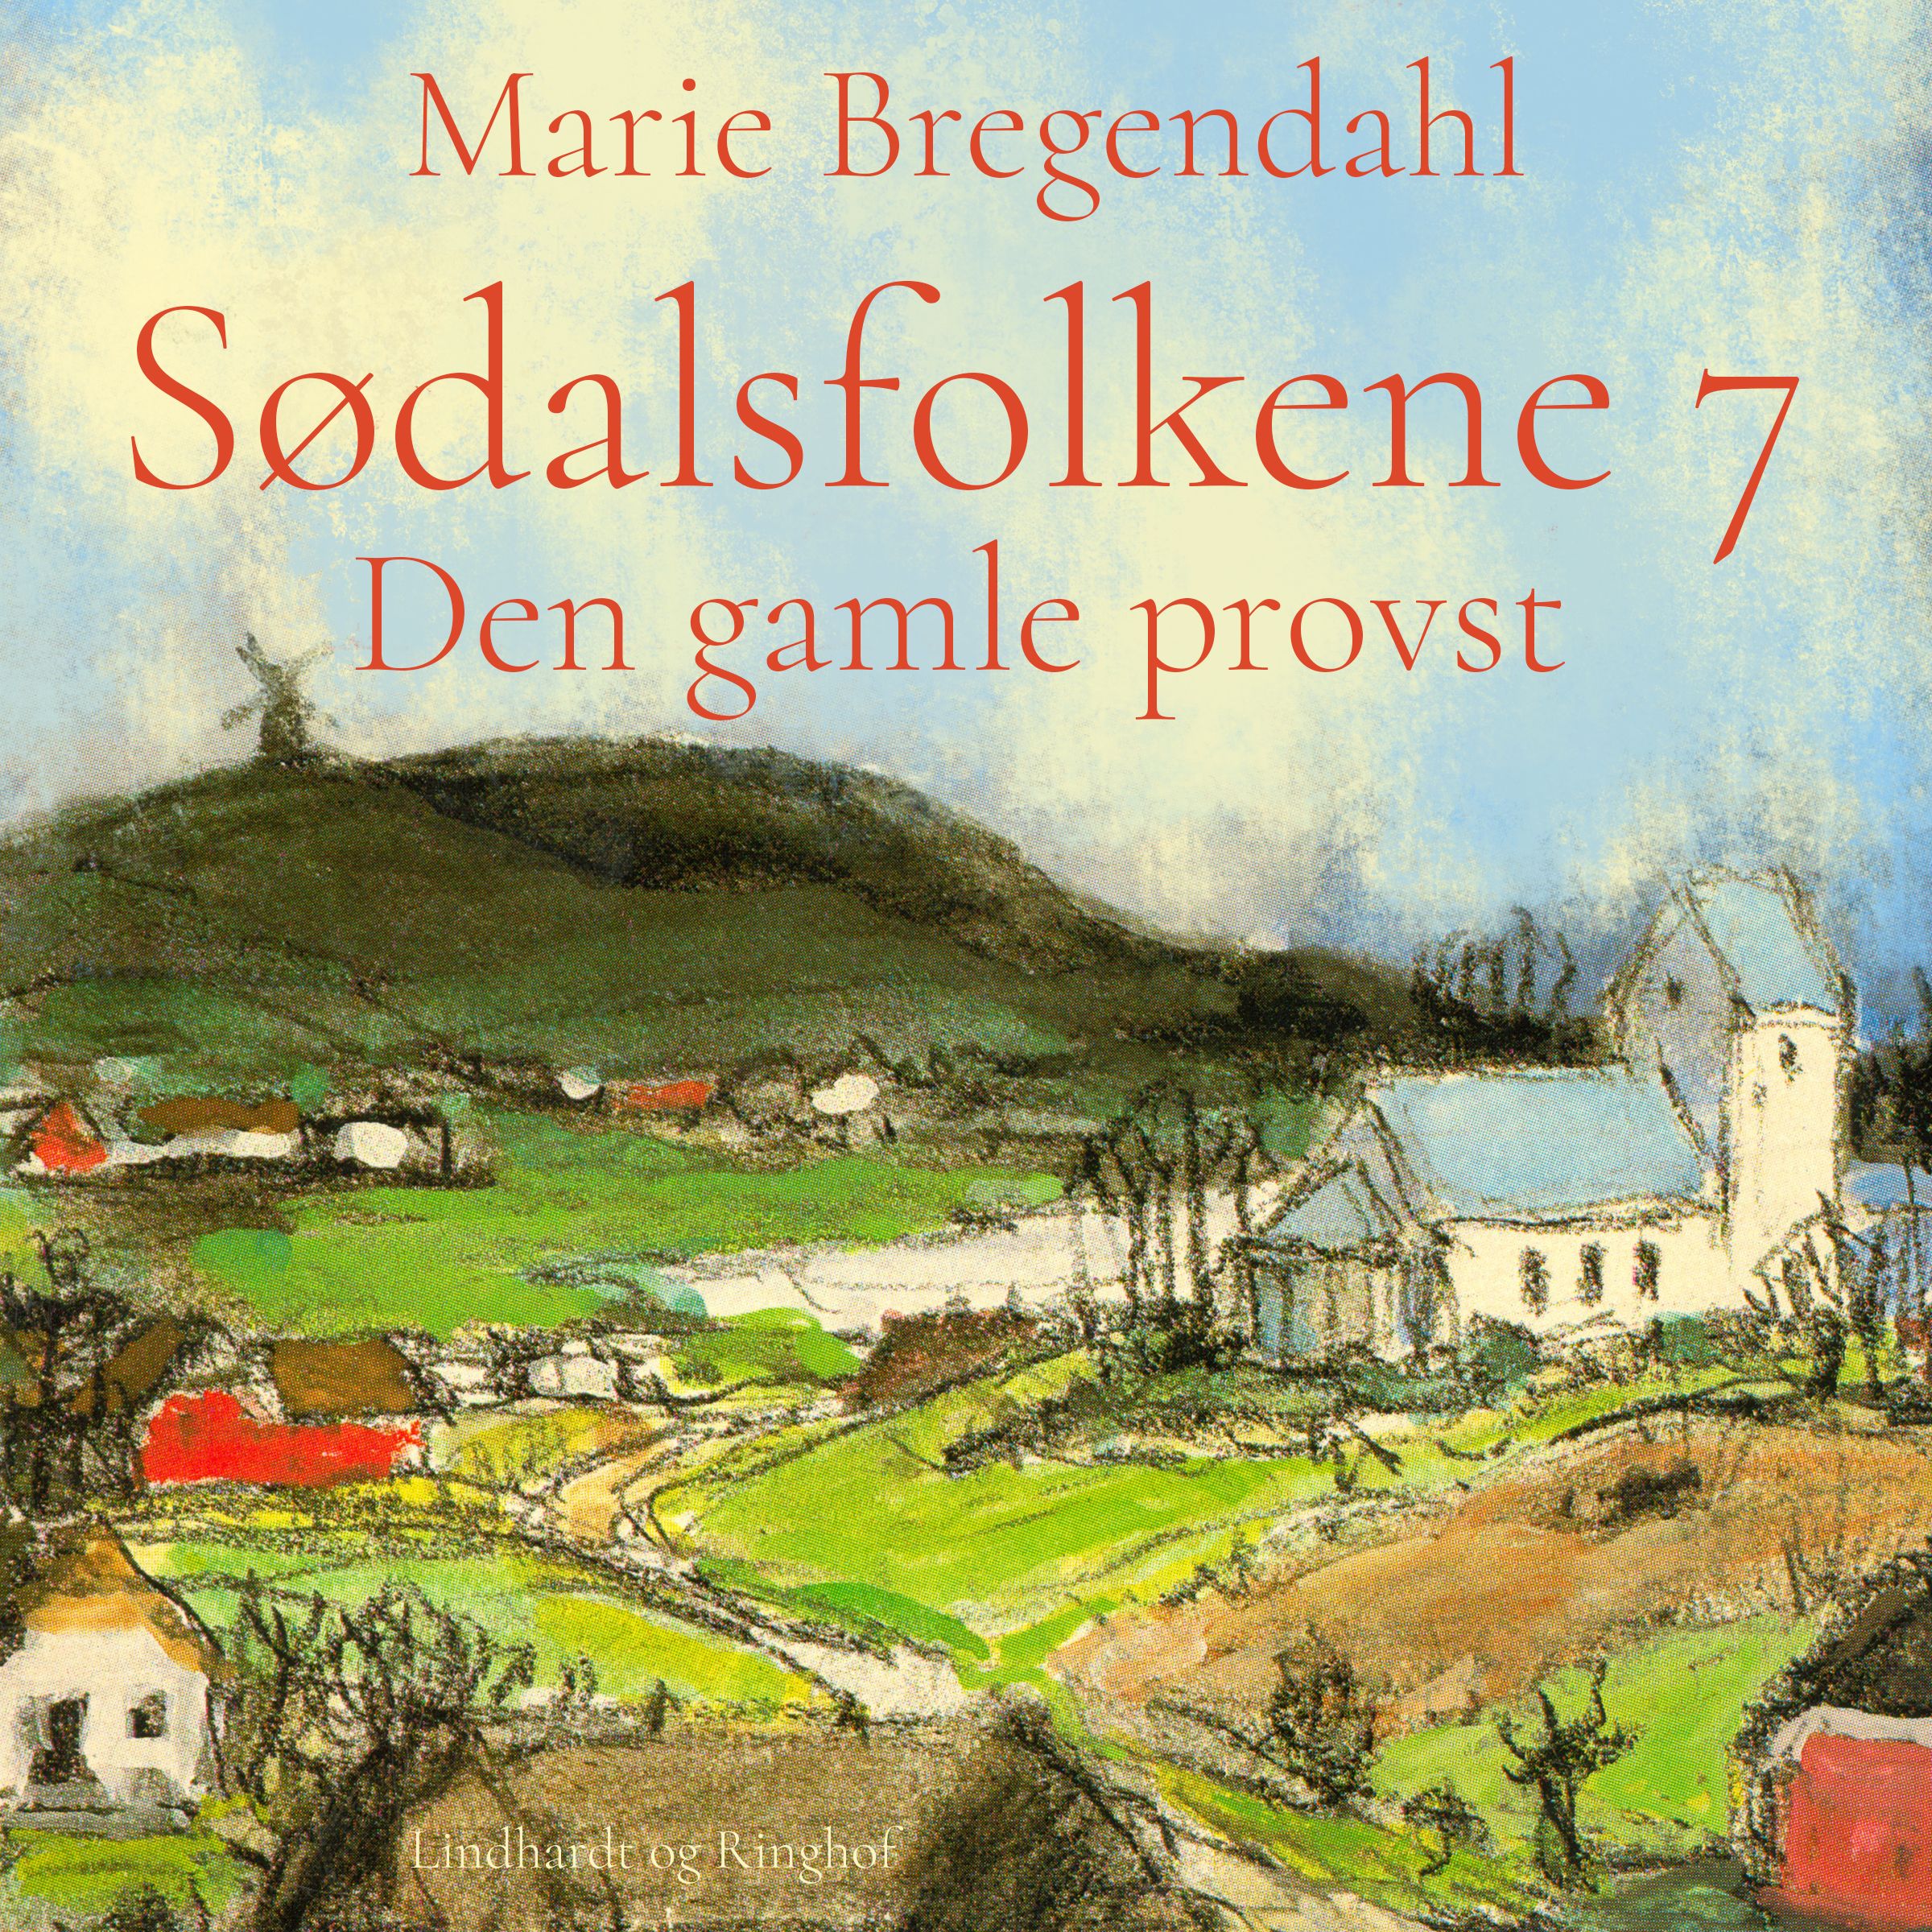 Sødalsfolkene - Den gamle provst, ljudbok av Marie Bregendahl